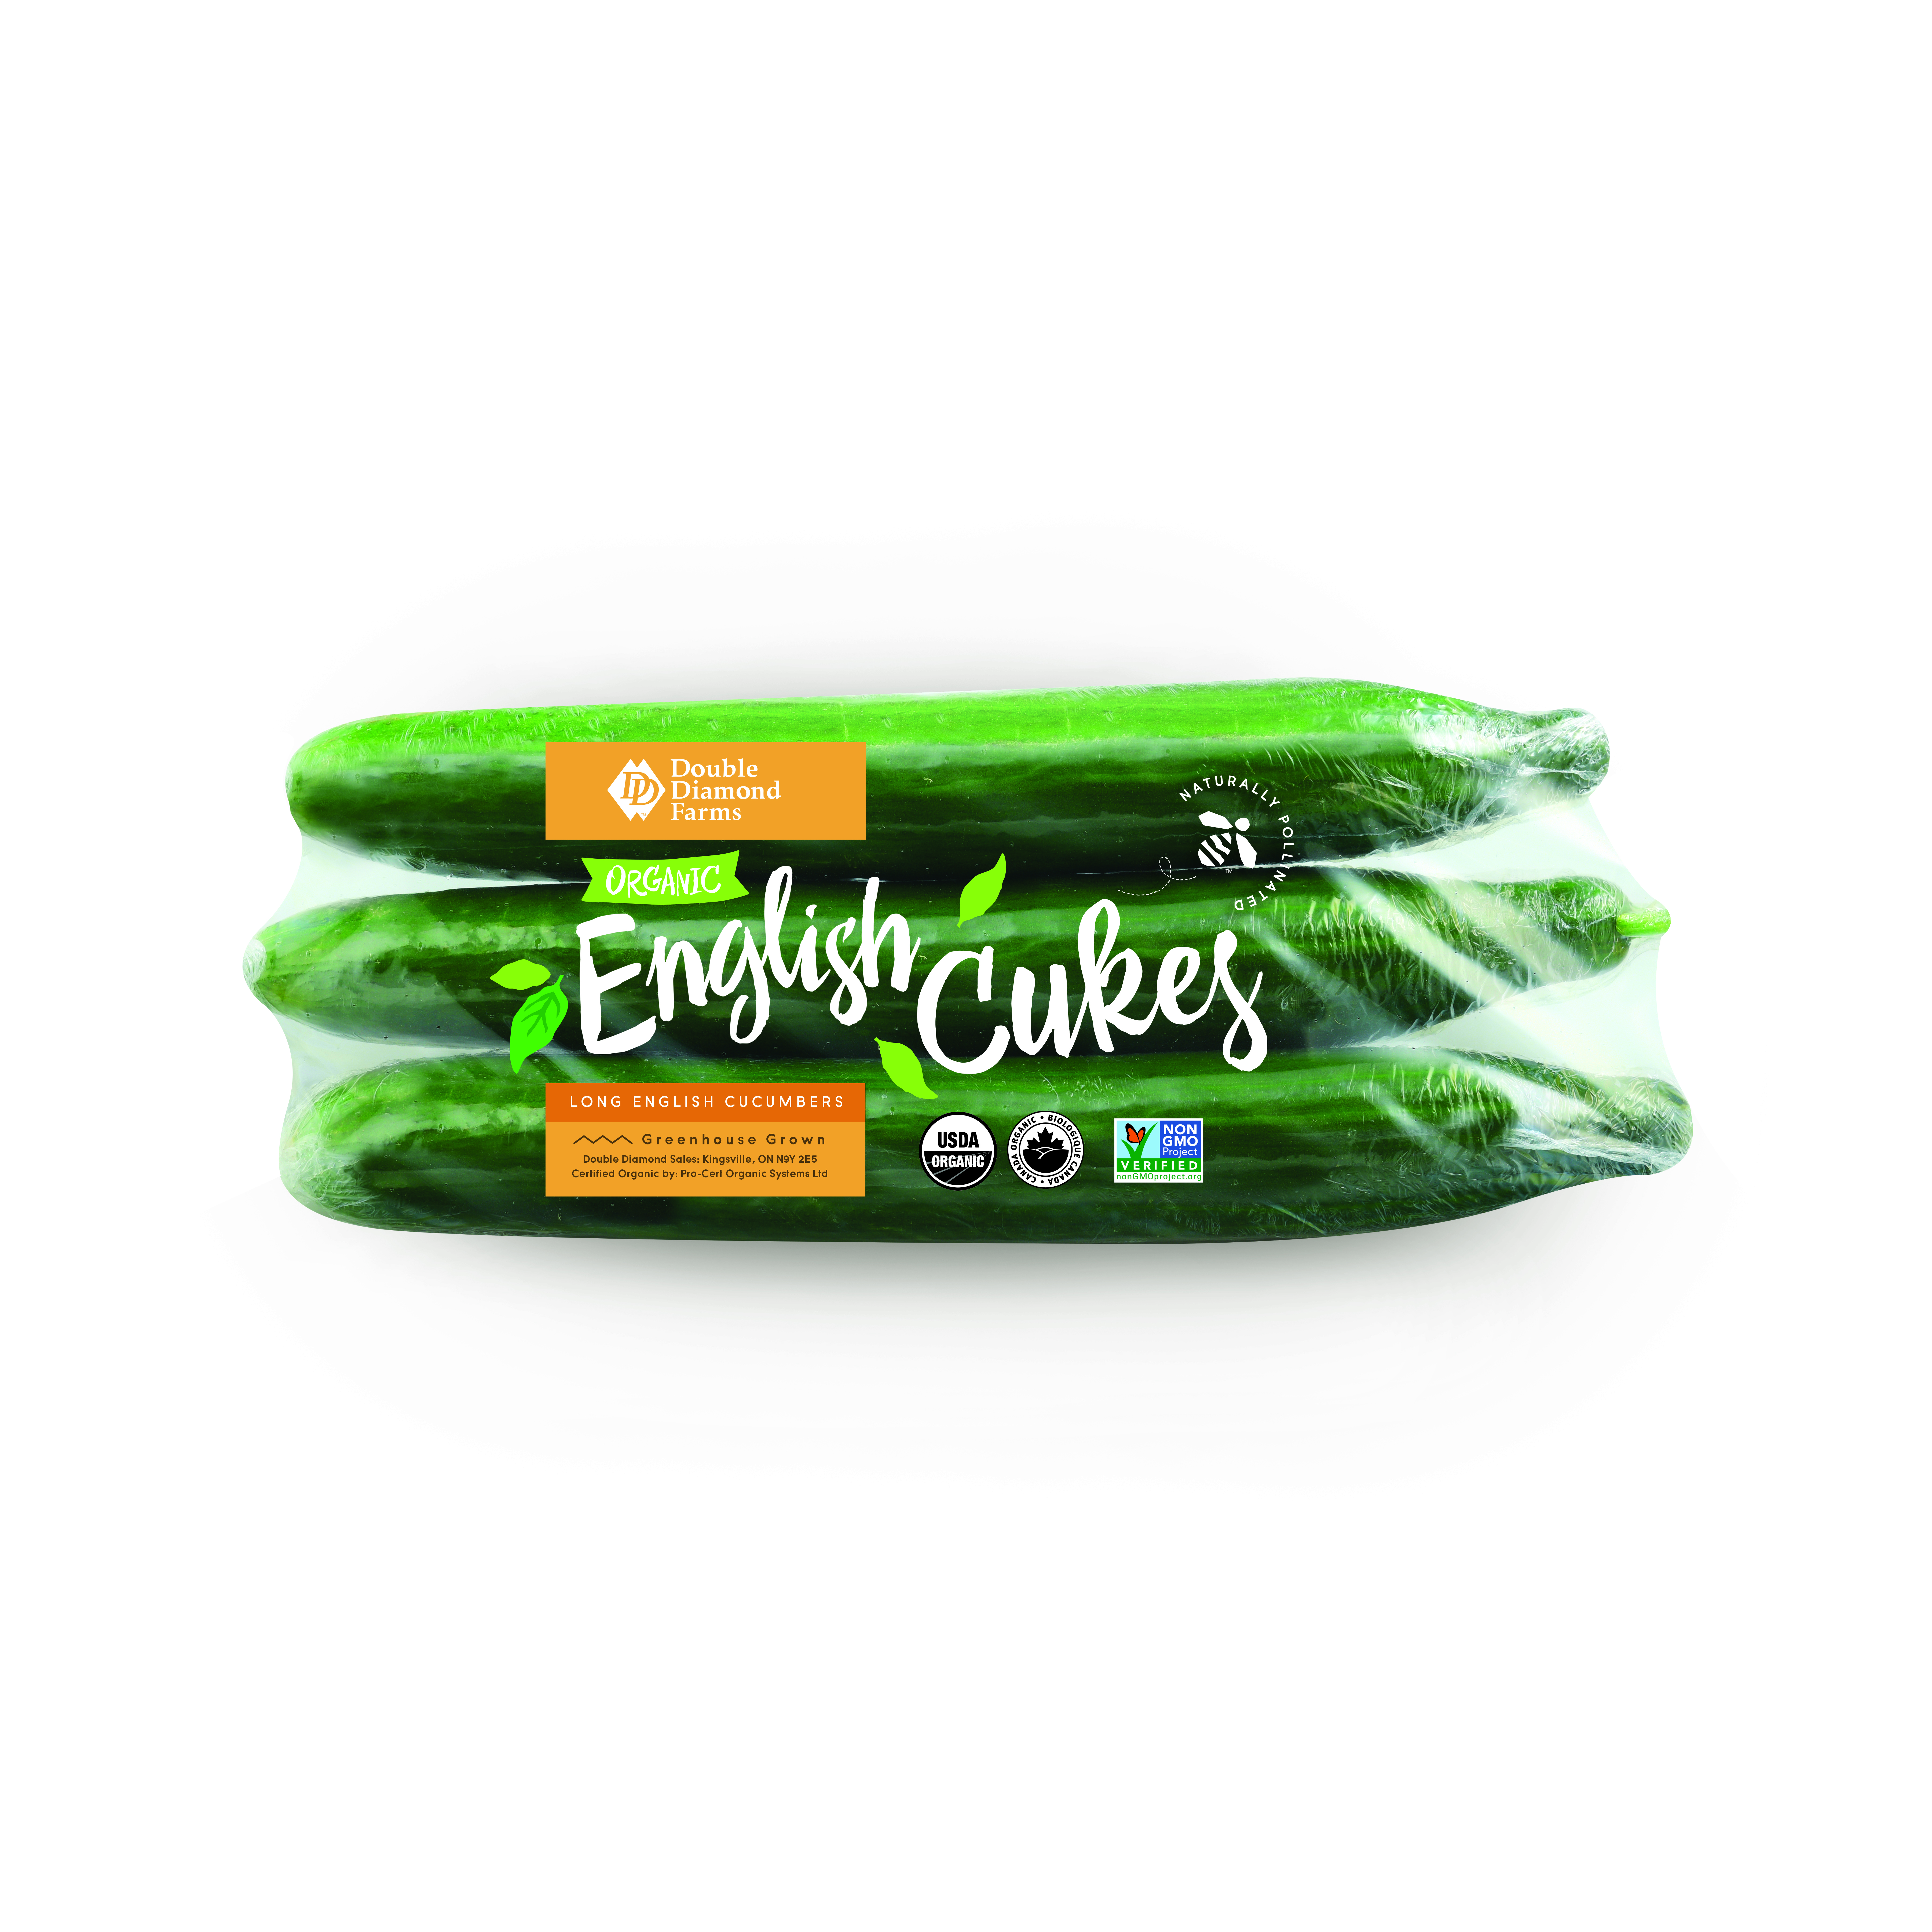 Organic English Cucumbers